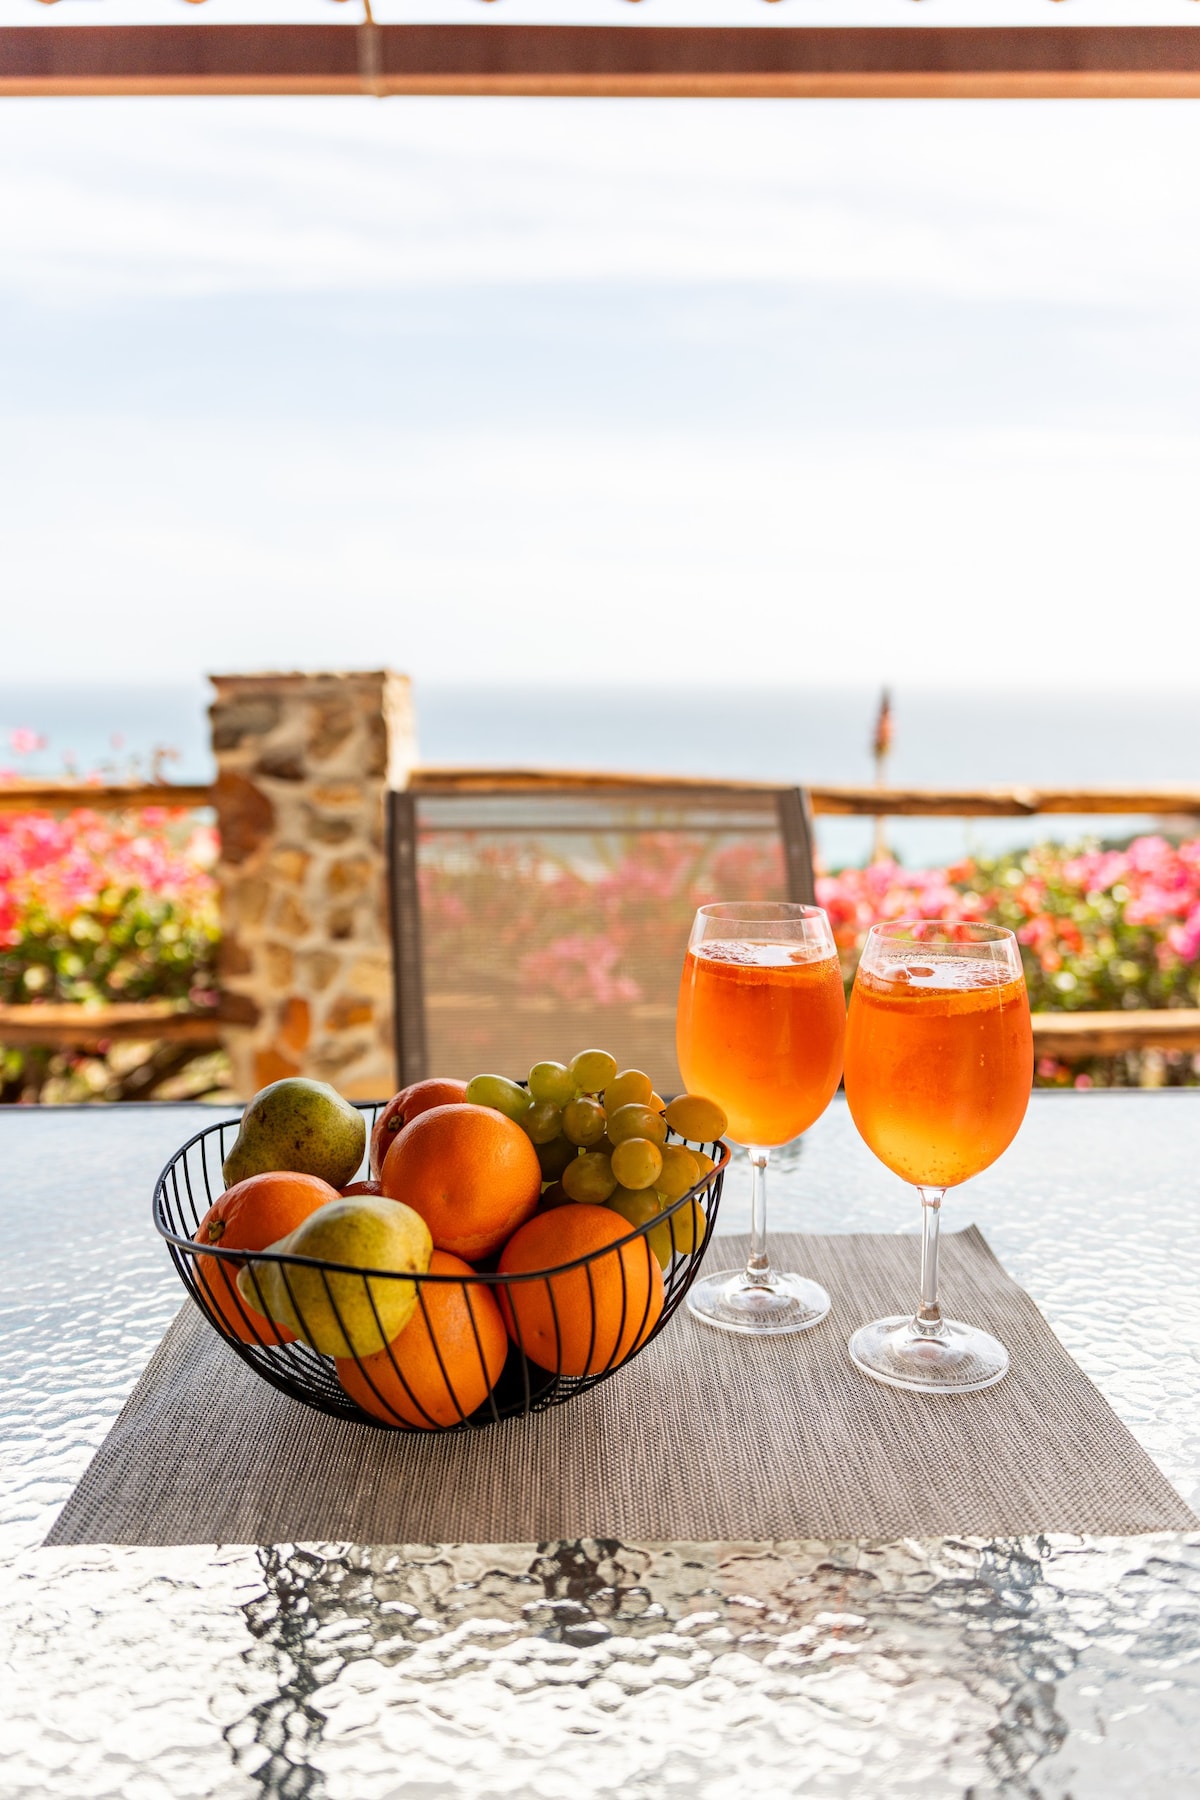 Deliziosa villetta con panorama mozzafiato  Splendid holiday home with breathtaking view